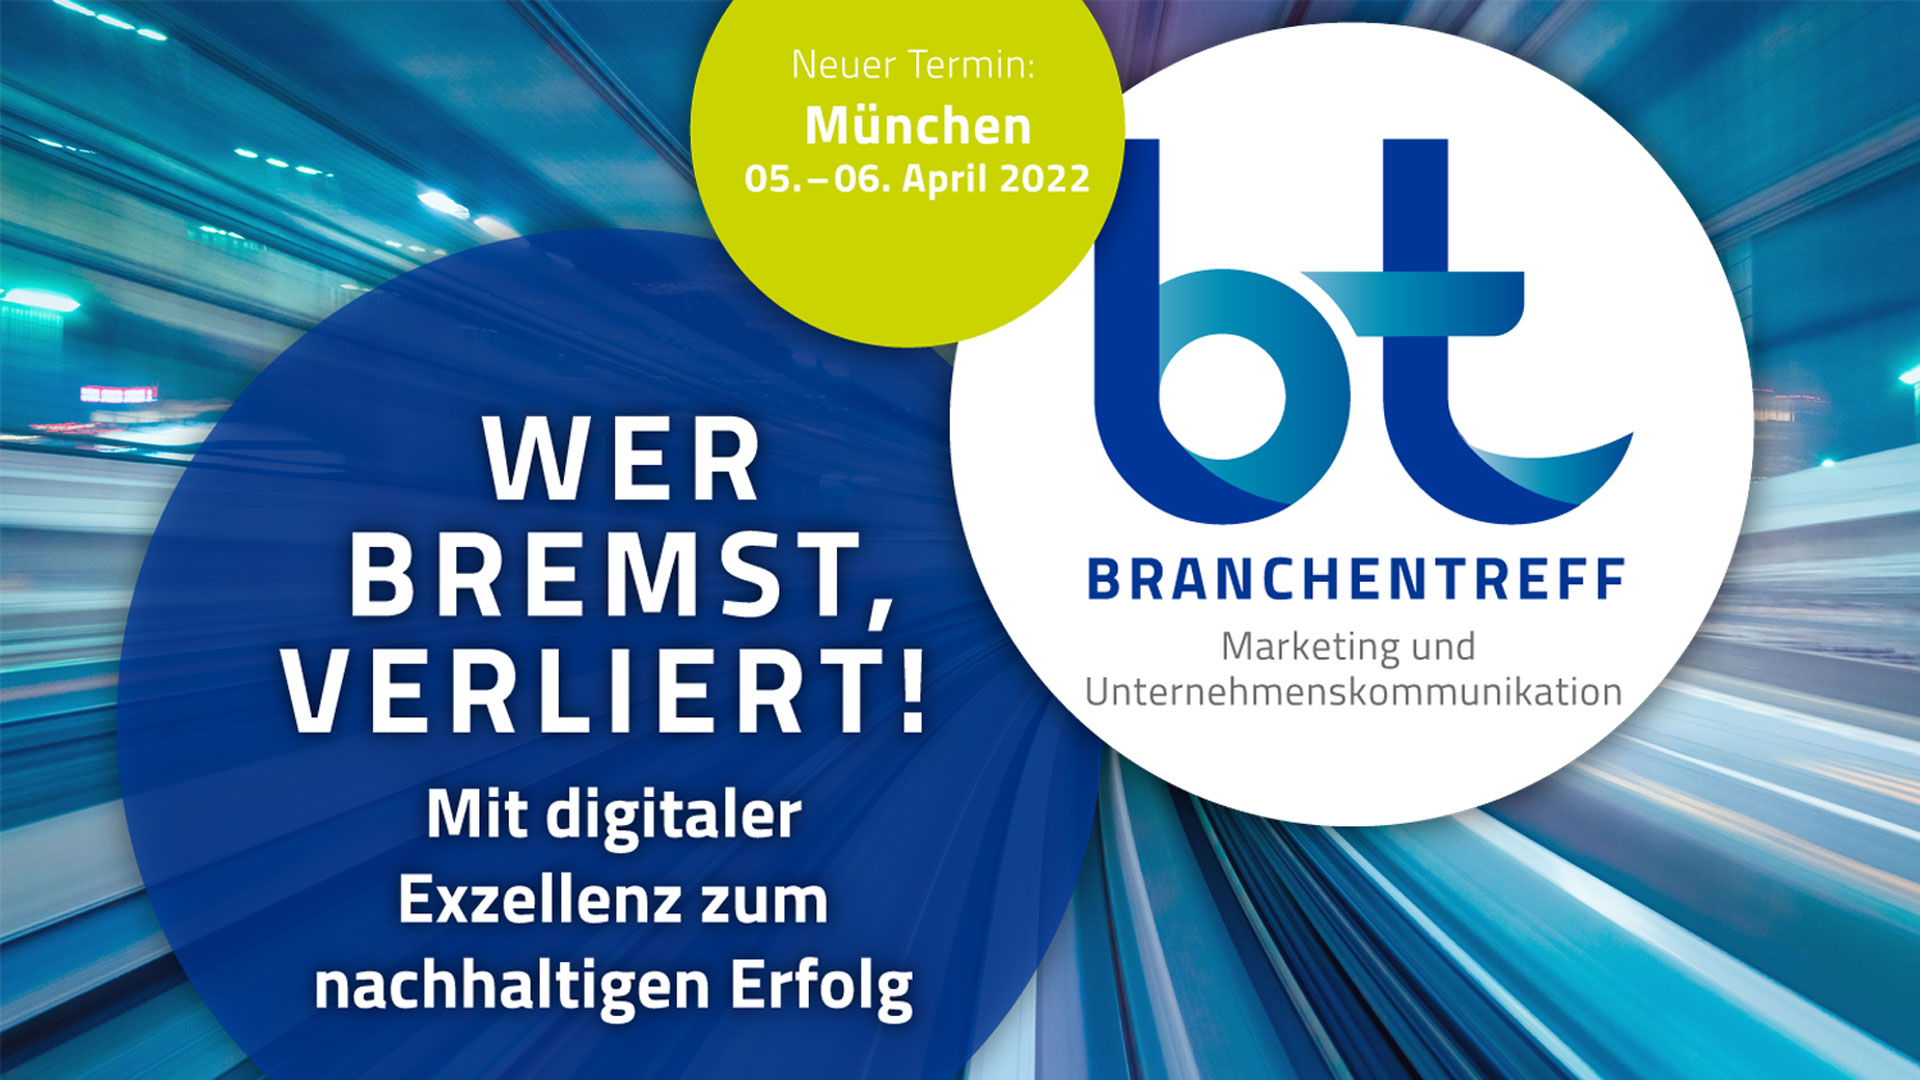 SAVE THE DATE: Branchentreff Marketing und Unternehmenskommunikation - 5.-6. April 2022 in München 